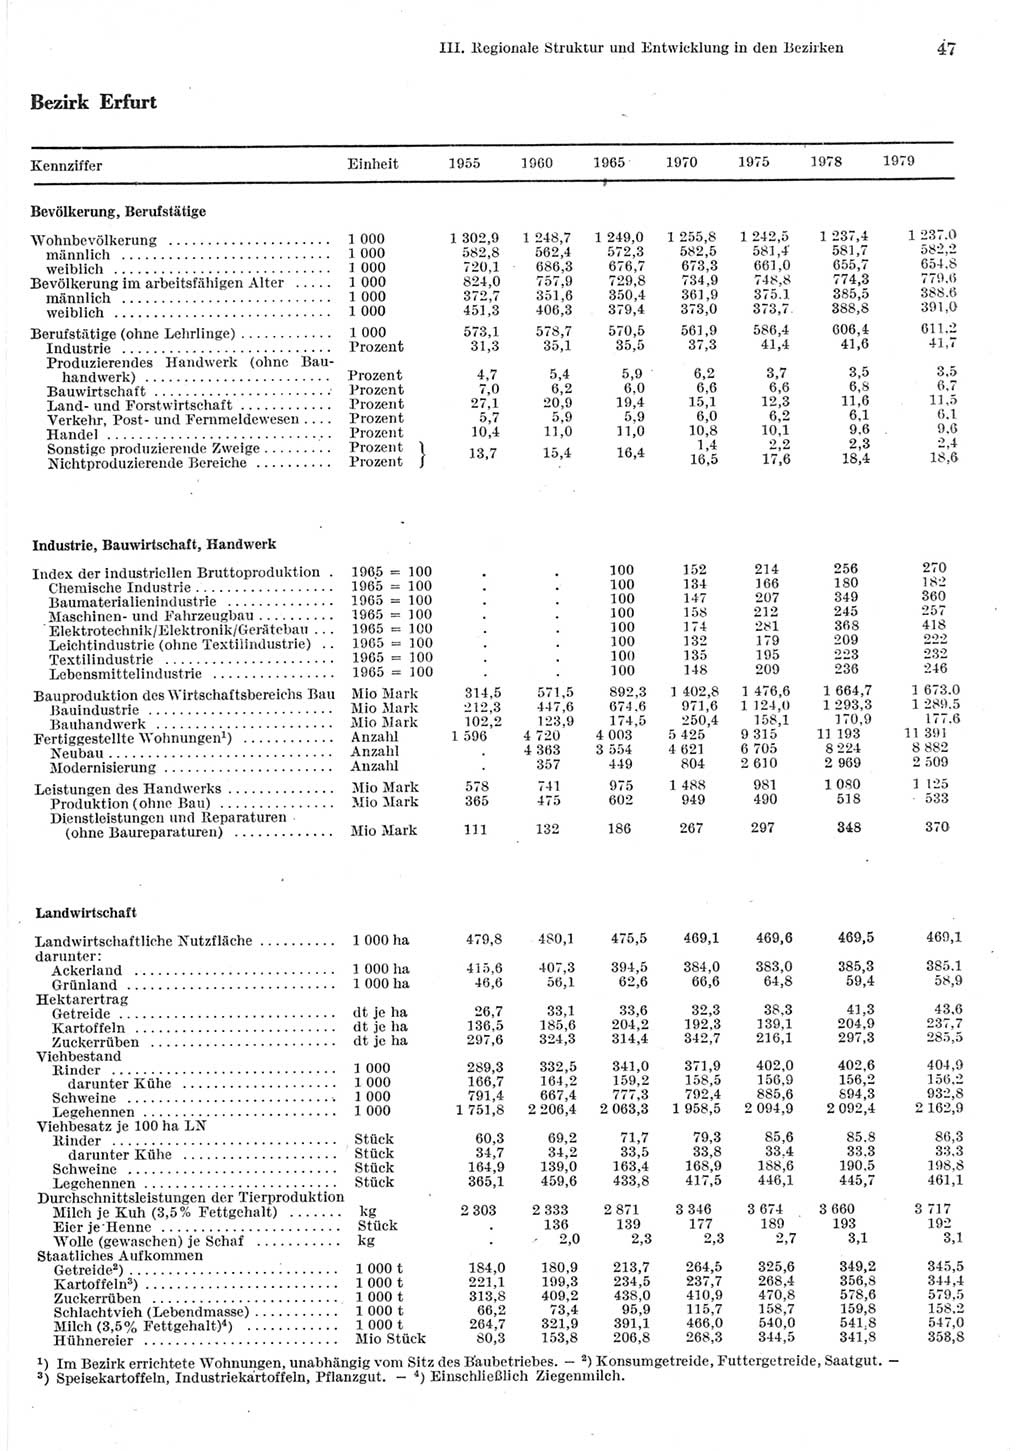 Statistisches Jahrbuch der Deutschen Demokratischen Republik (DDR) 1980, Seite 47 (Stat. Jb. DDR 1980, S. 47)